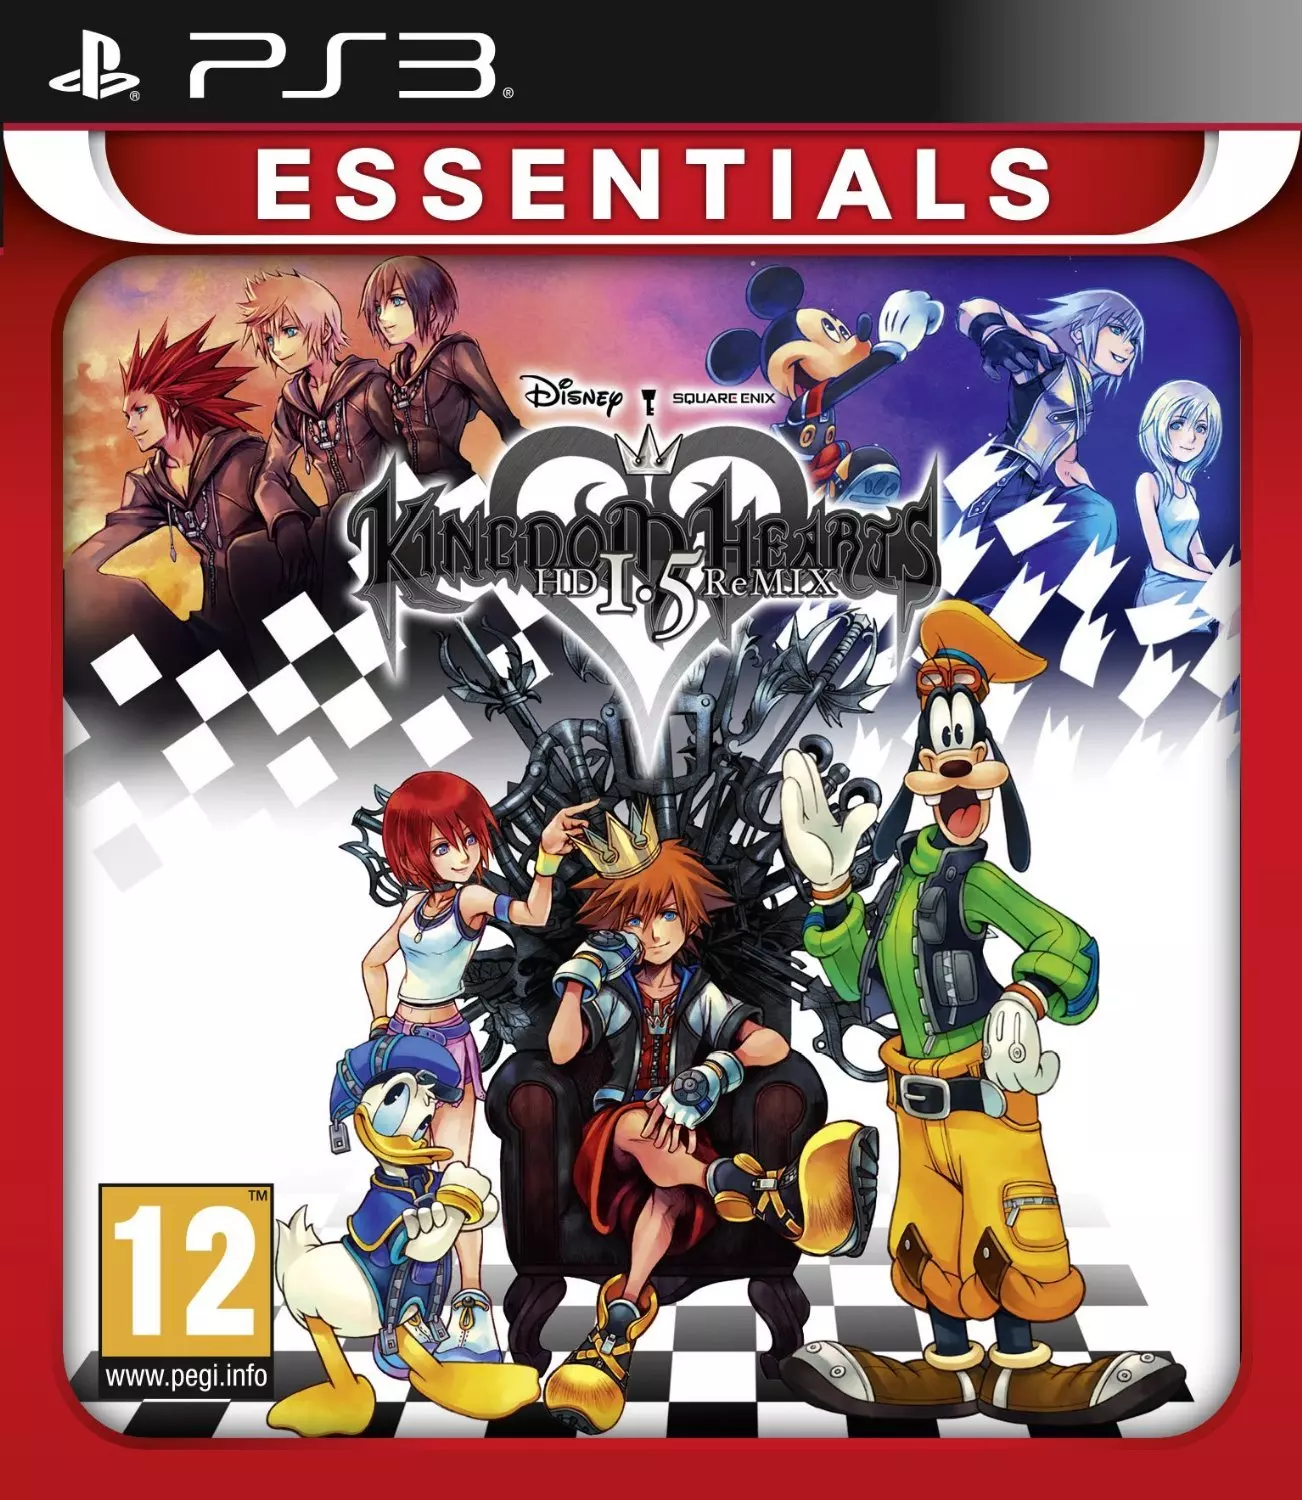 Kingdom Hearts Hd .Remix Essentials